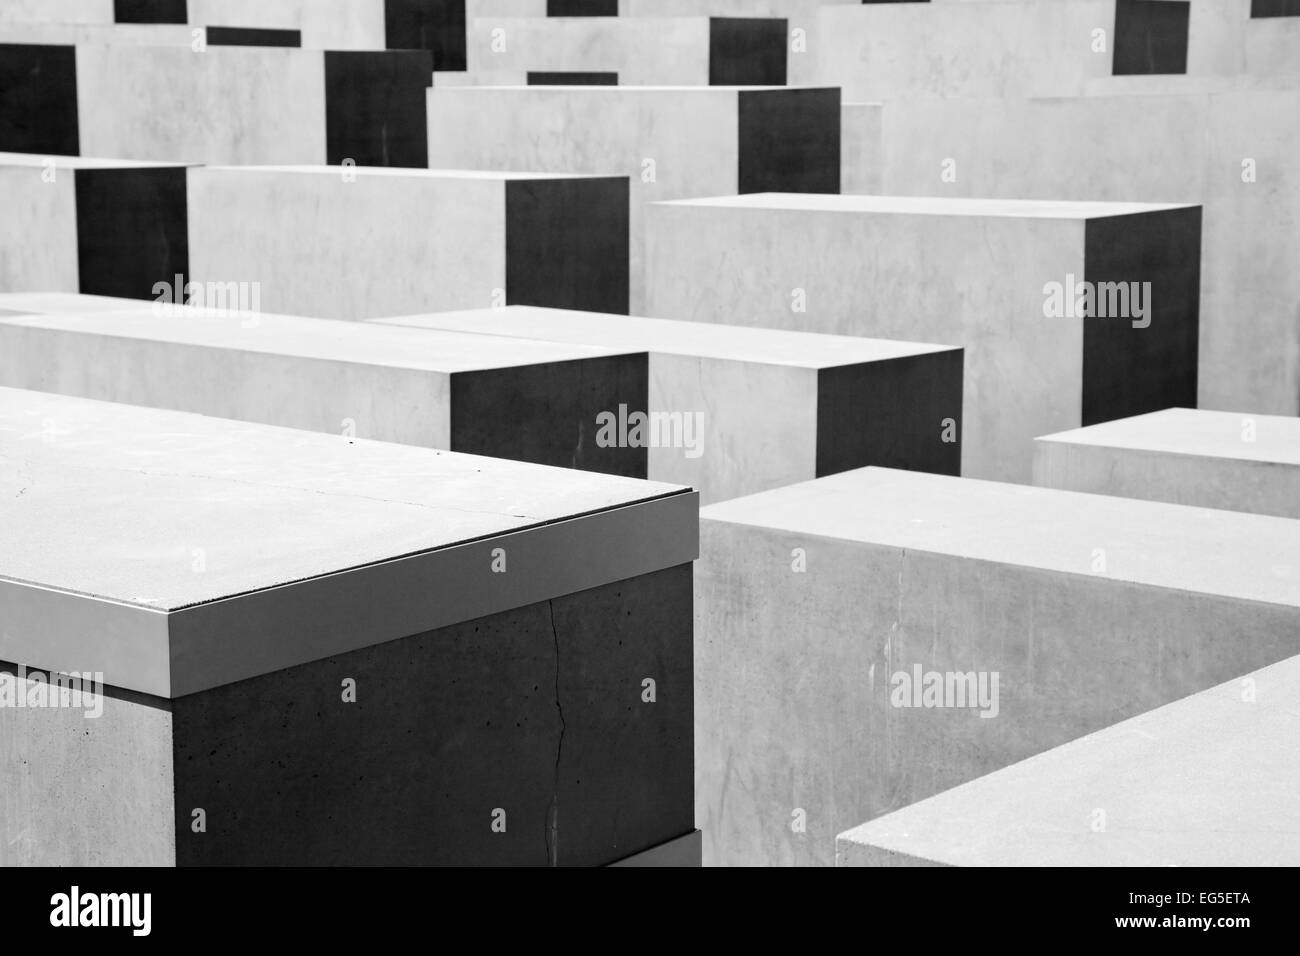 Memoriale al assassinato ebrei d'Europa. Il Memoriale dell'Olocausto a Berlino, Germania Foto Stock